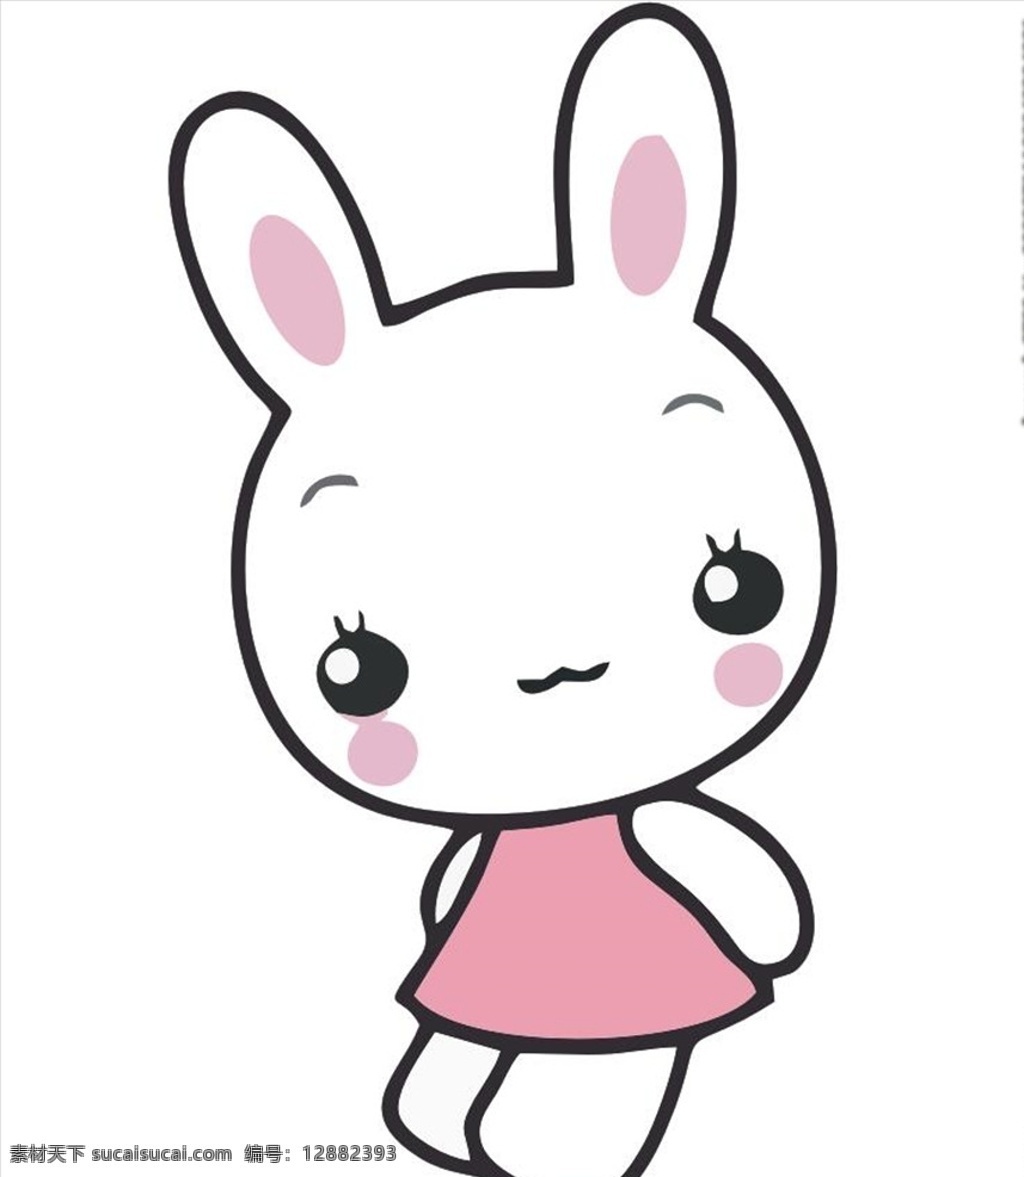 呆 卡通 可爱 兔兔 简笔 卡哇伊人物 动物 植物 招贴设计